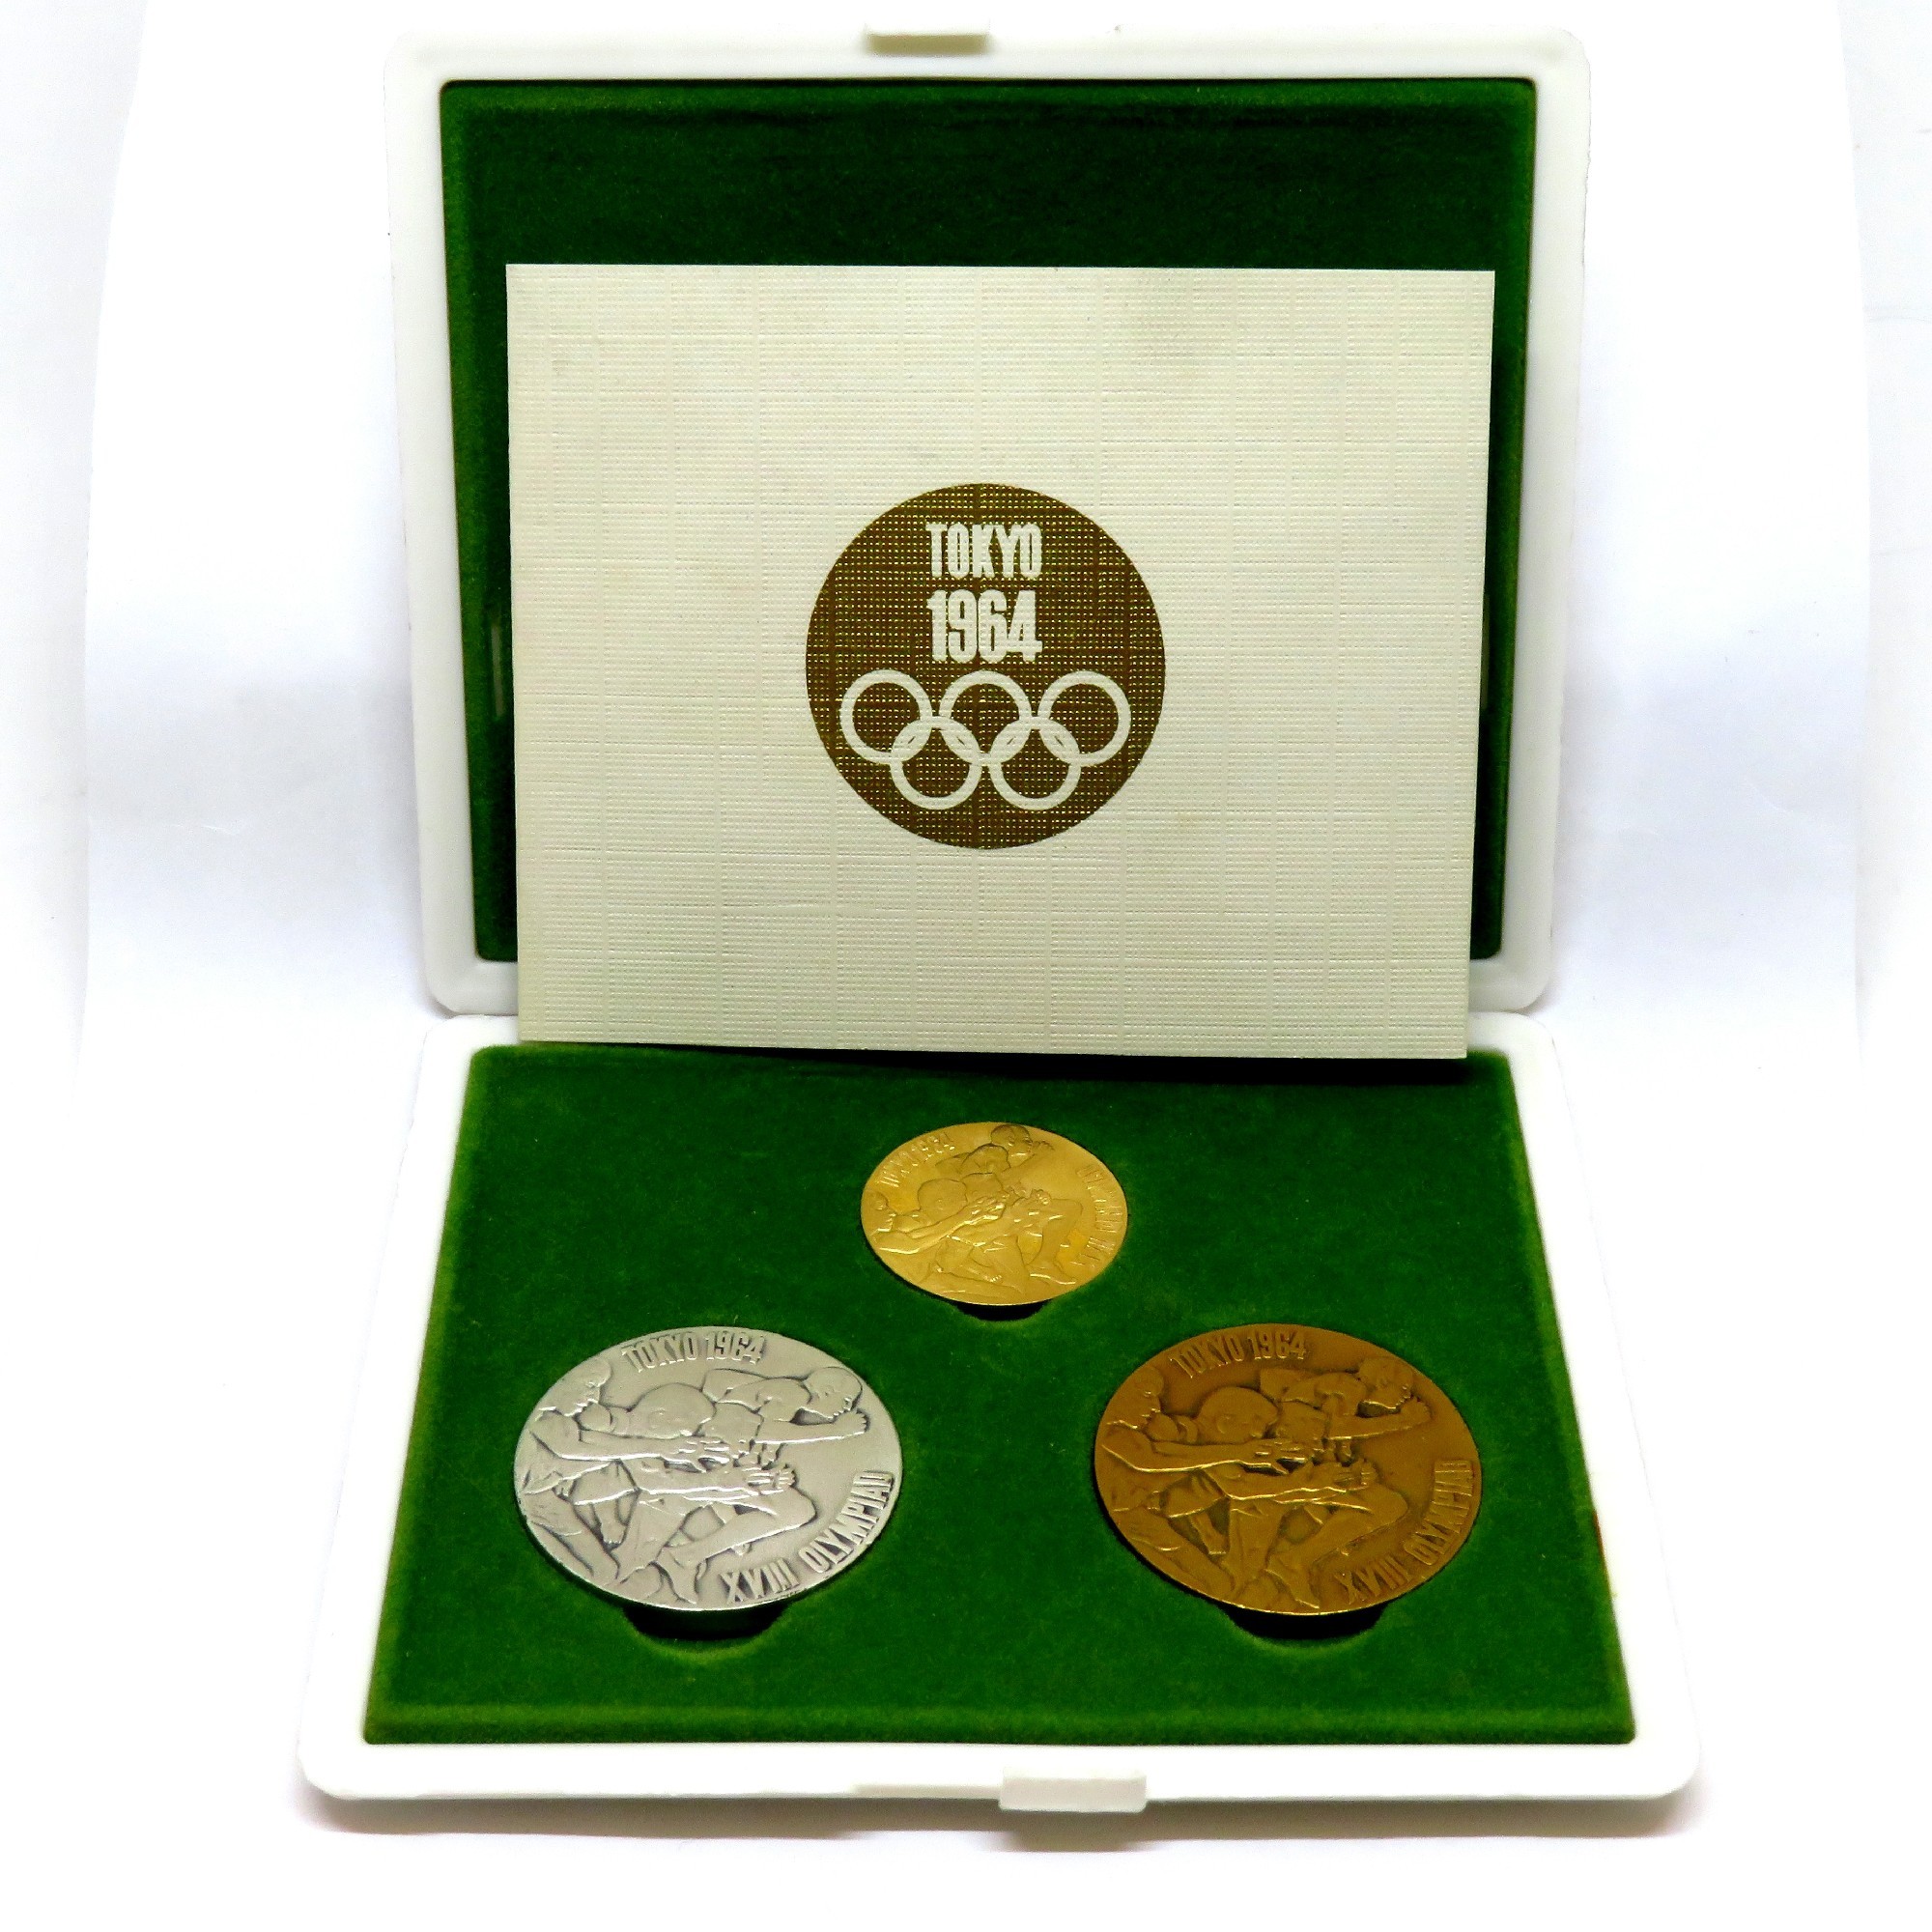 最高の品質の 1964年TOKYOオリンピック記念硬貨セット 旧貨幣/金貨 ...